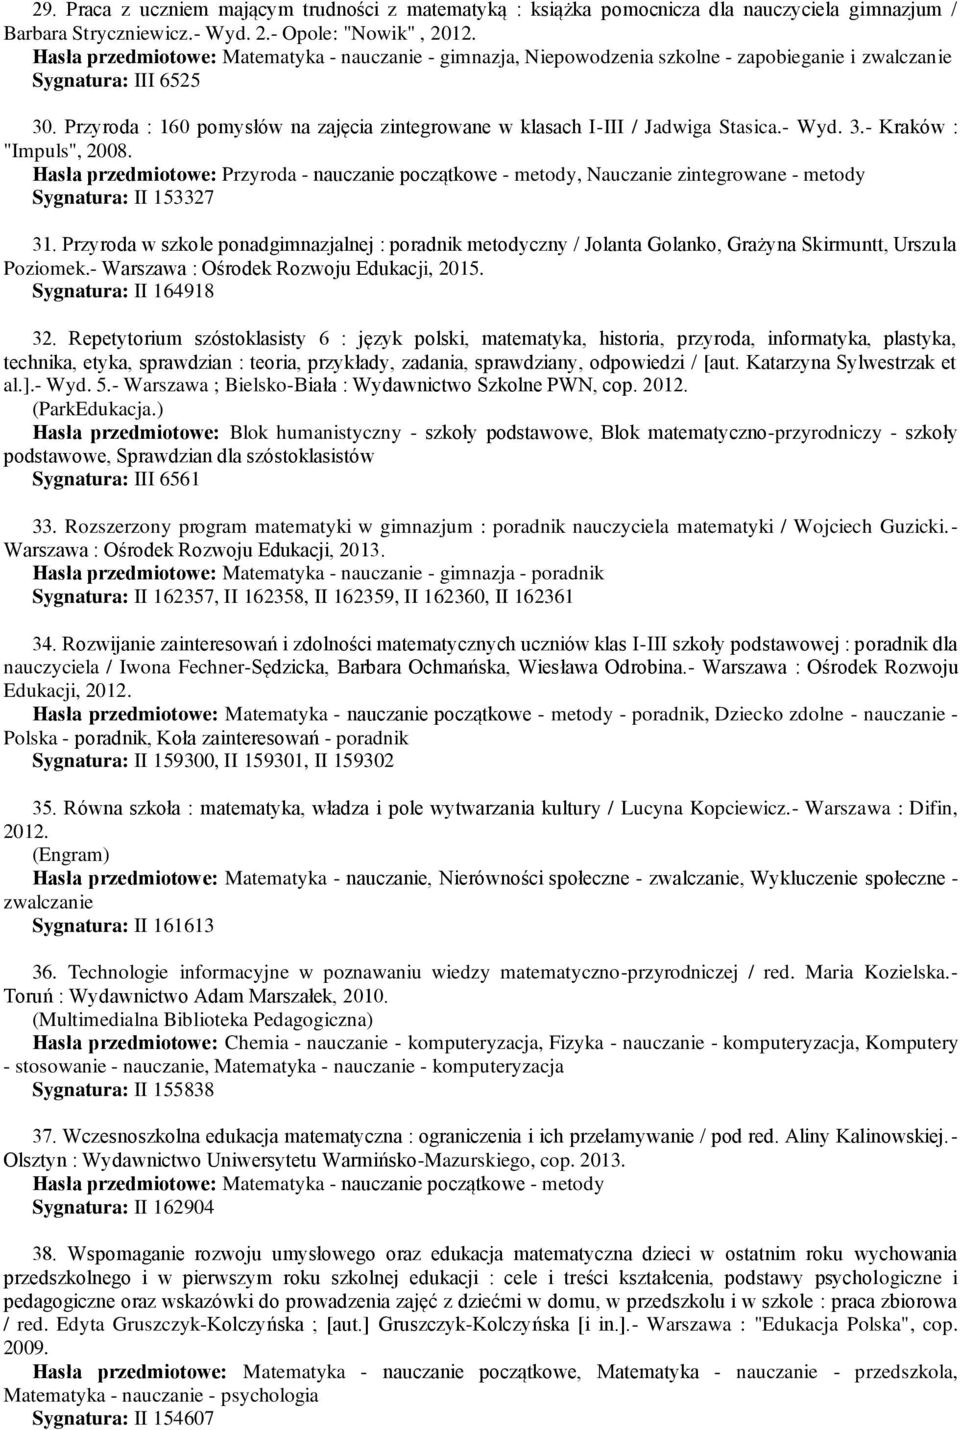 Przyroda : 160 pomysłów na zajęcia zintegrowane w klasach I-III / Jadwiga Stasica.- Wyd. 3.- Kraków : "Impuls", 2008.